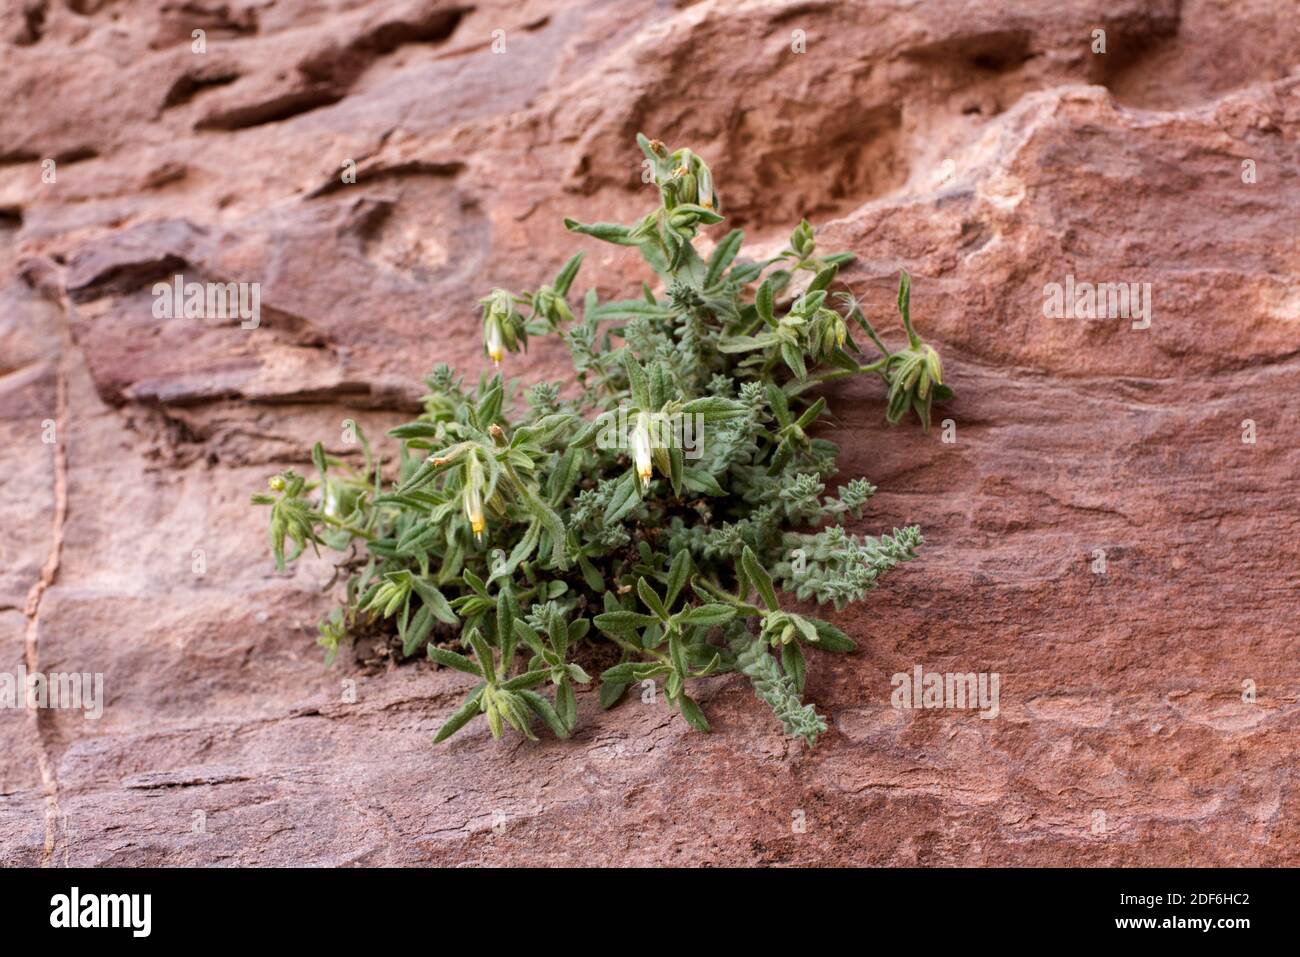 La goccia d'oro (Podonosma orientalis o Onosma orientalis) è un'erba perenne che cresce su rocce e crepacci. Questa foto è stata scattata a Petra, Giordania. Foto Stock